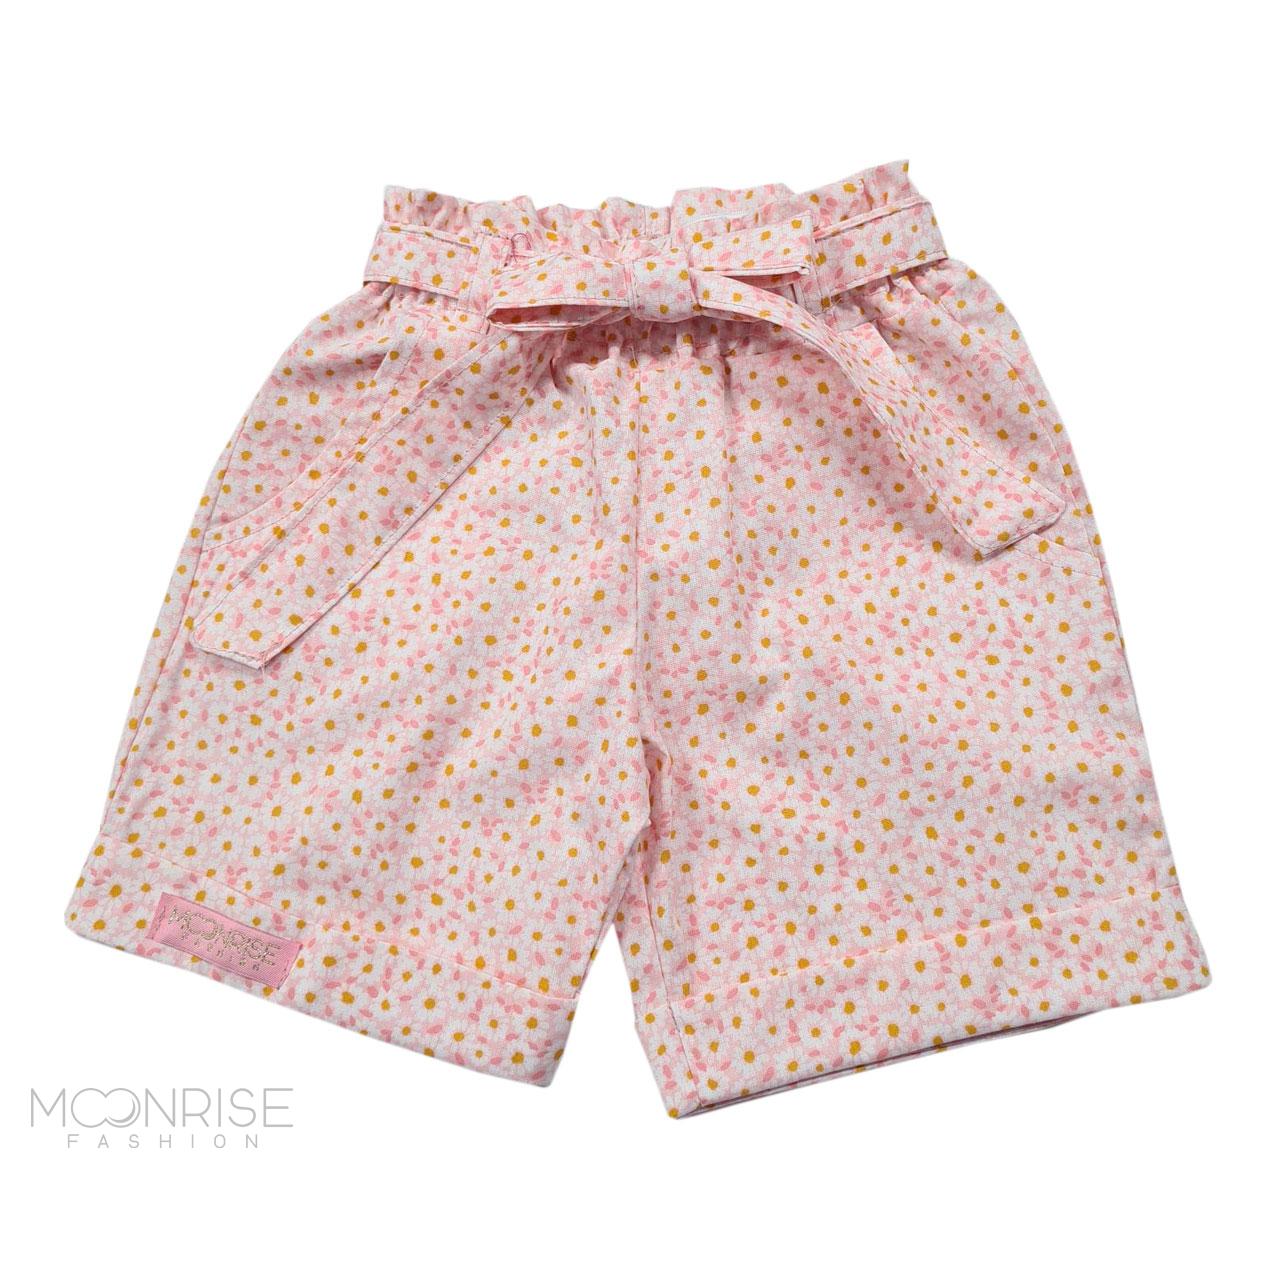 Detské bavlnené kraťasy - daisies light pink